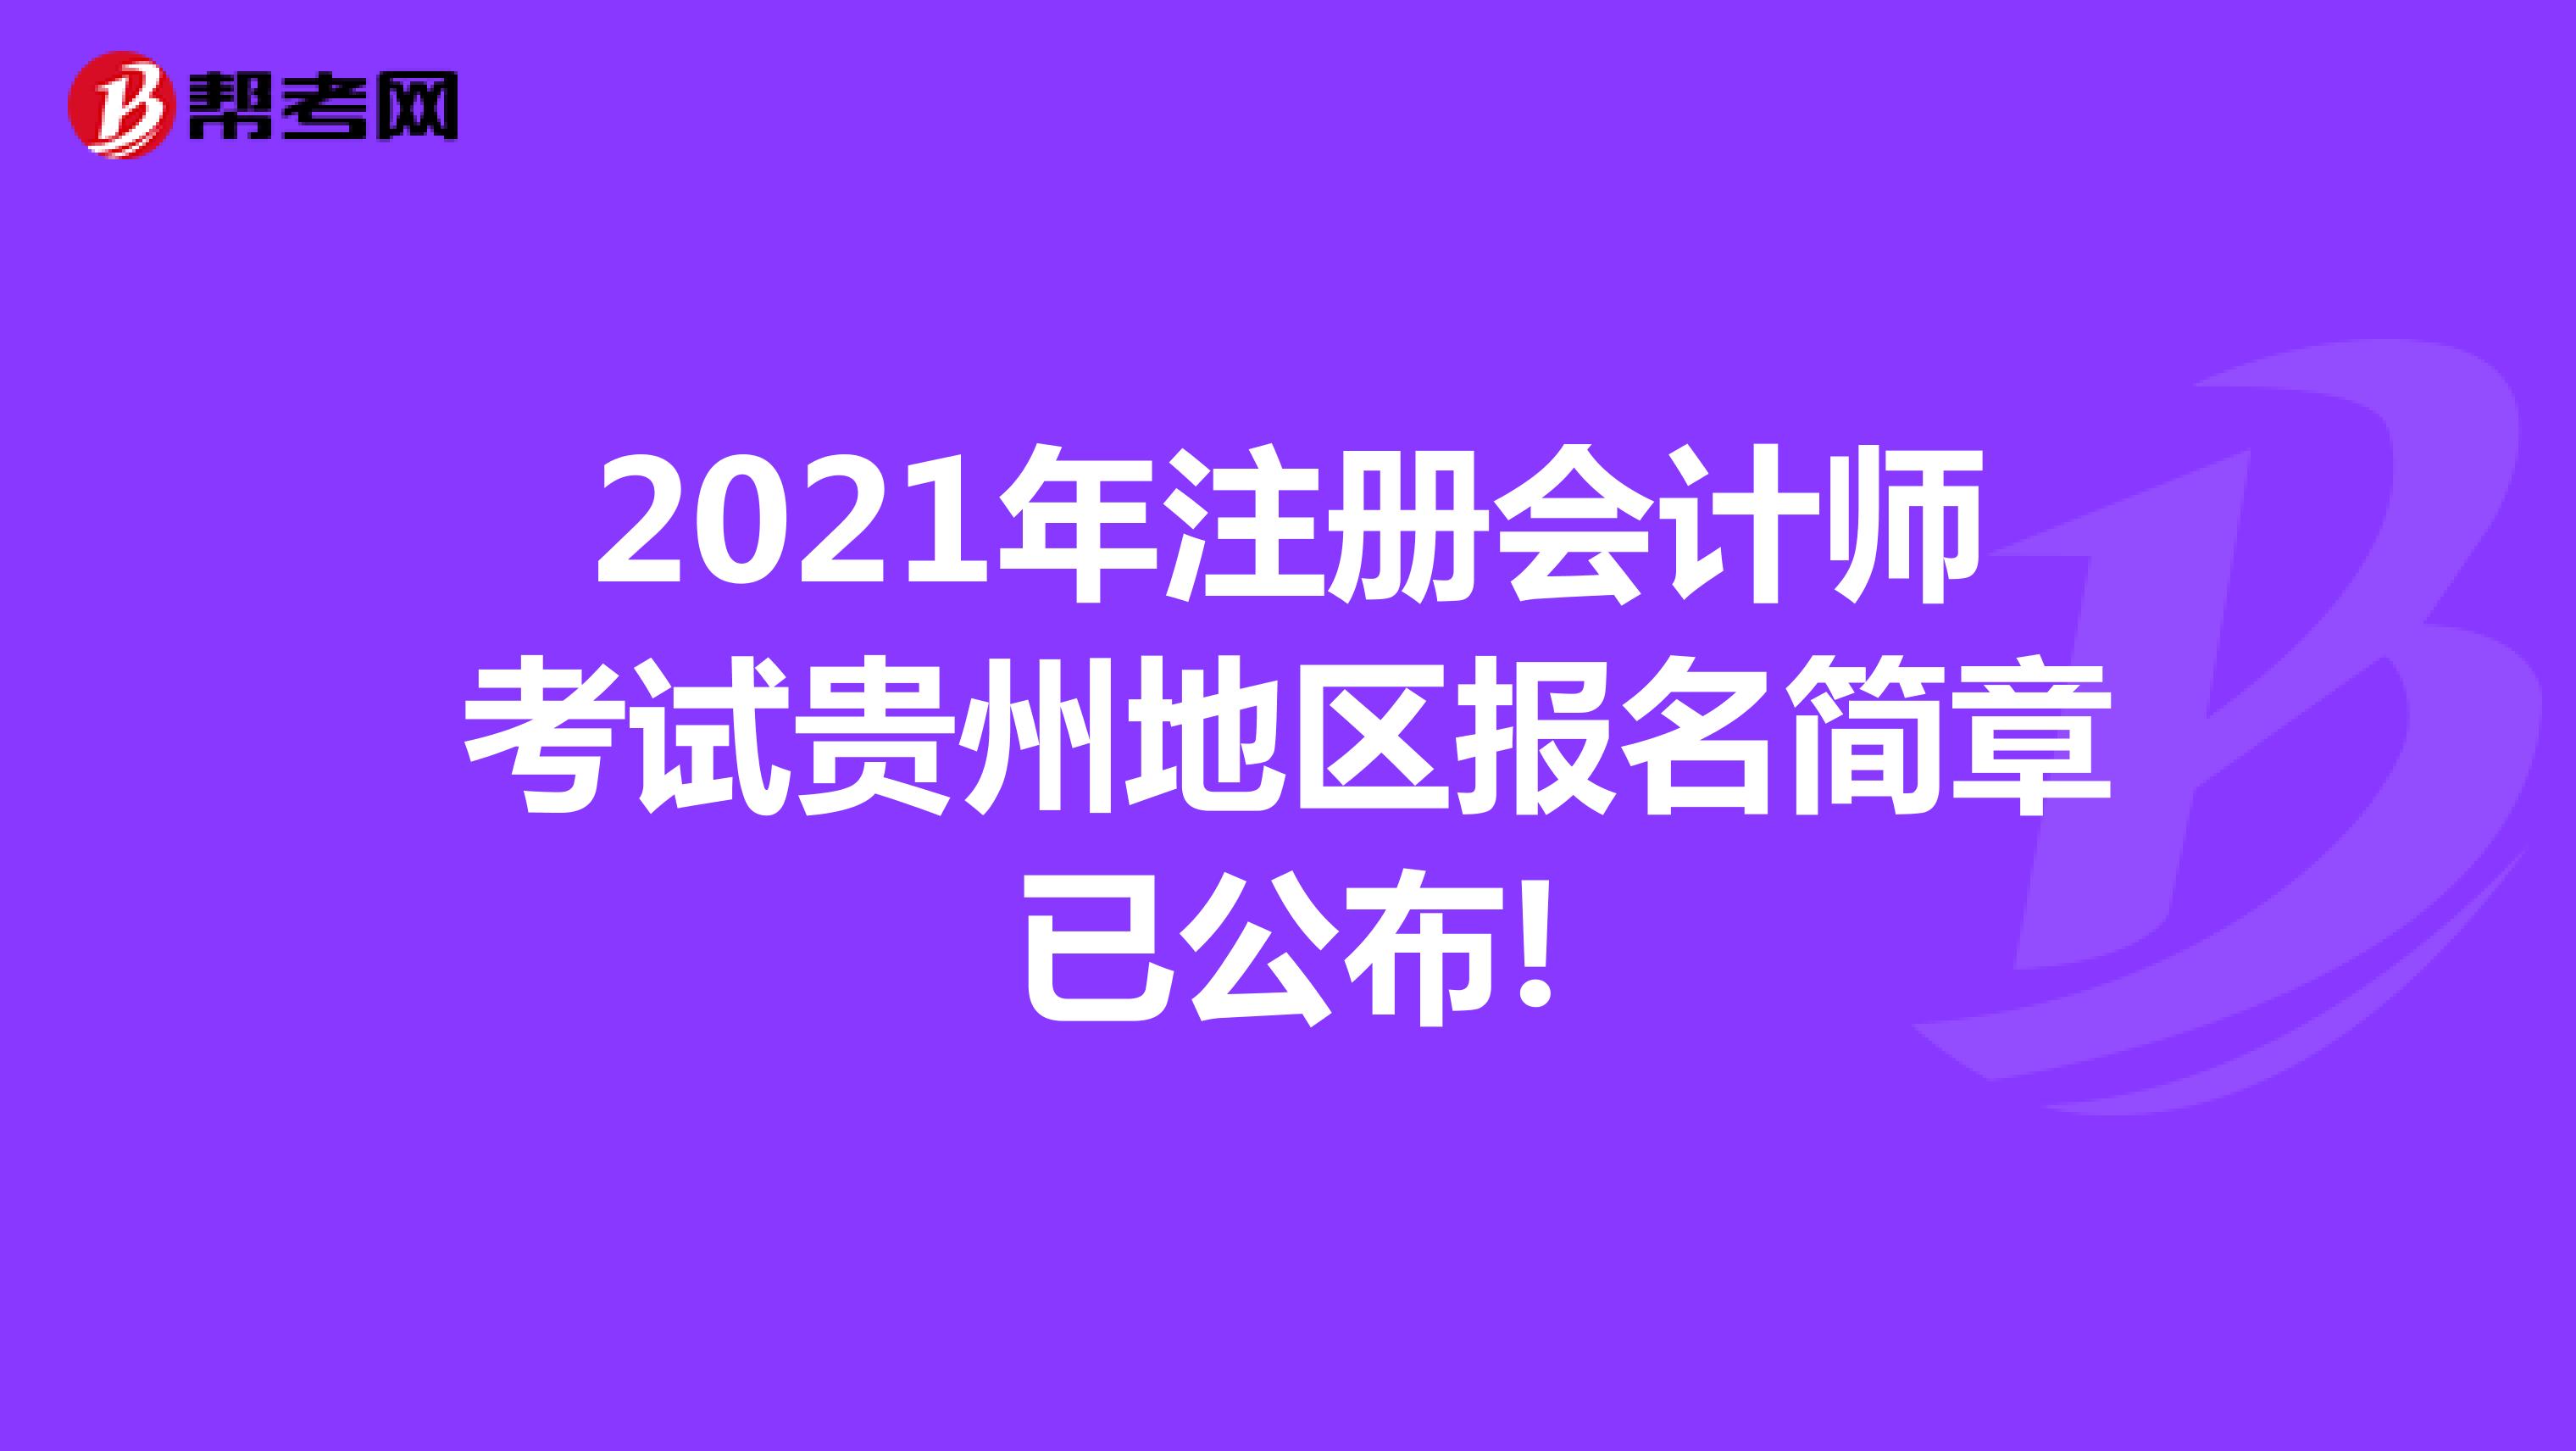 2021年注册会计师考试贵州地区报名简章已公布!